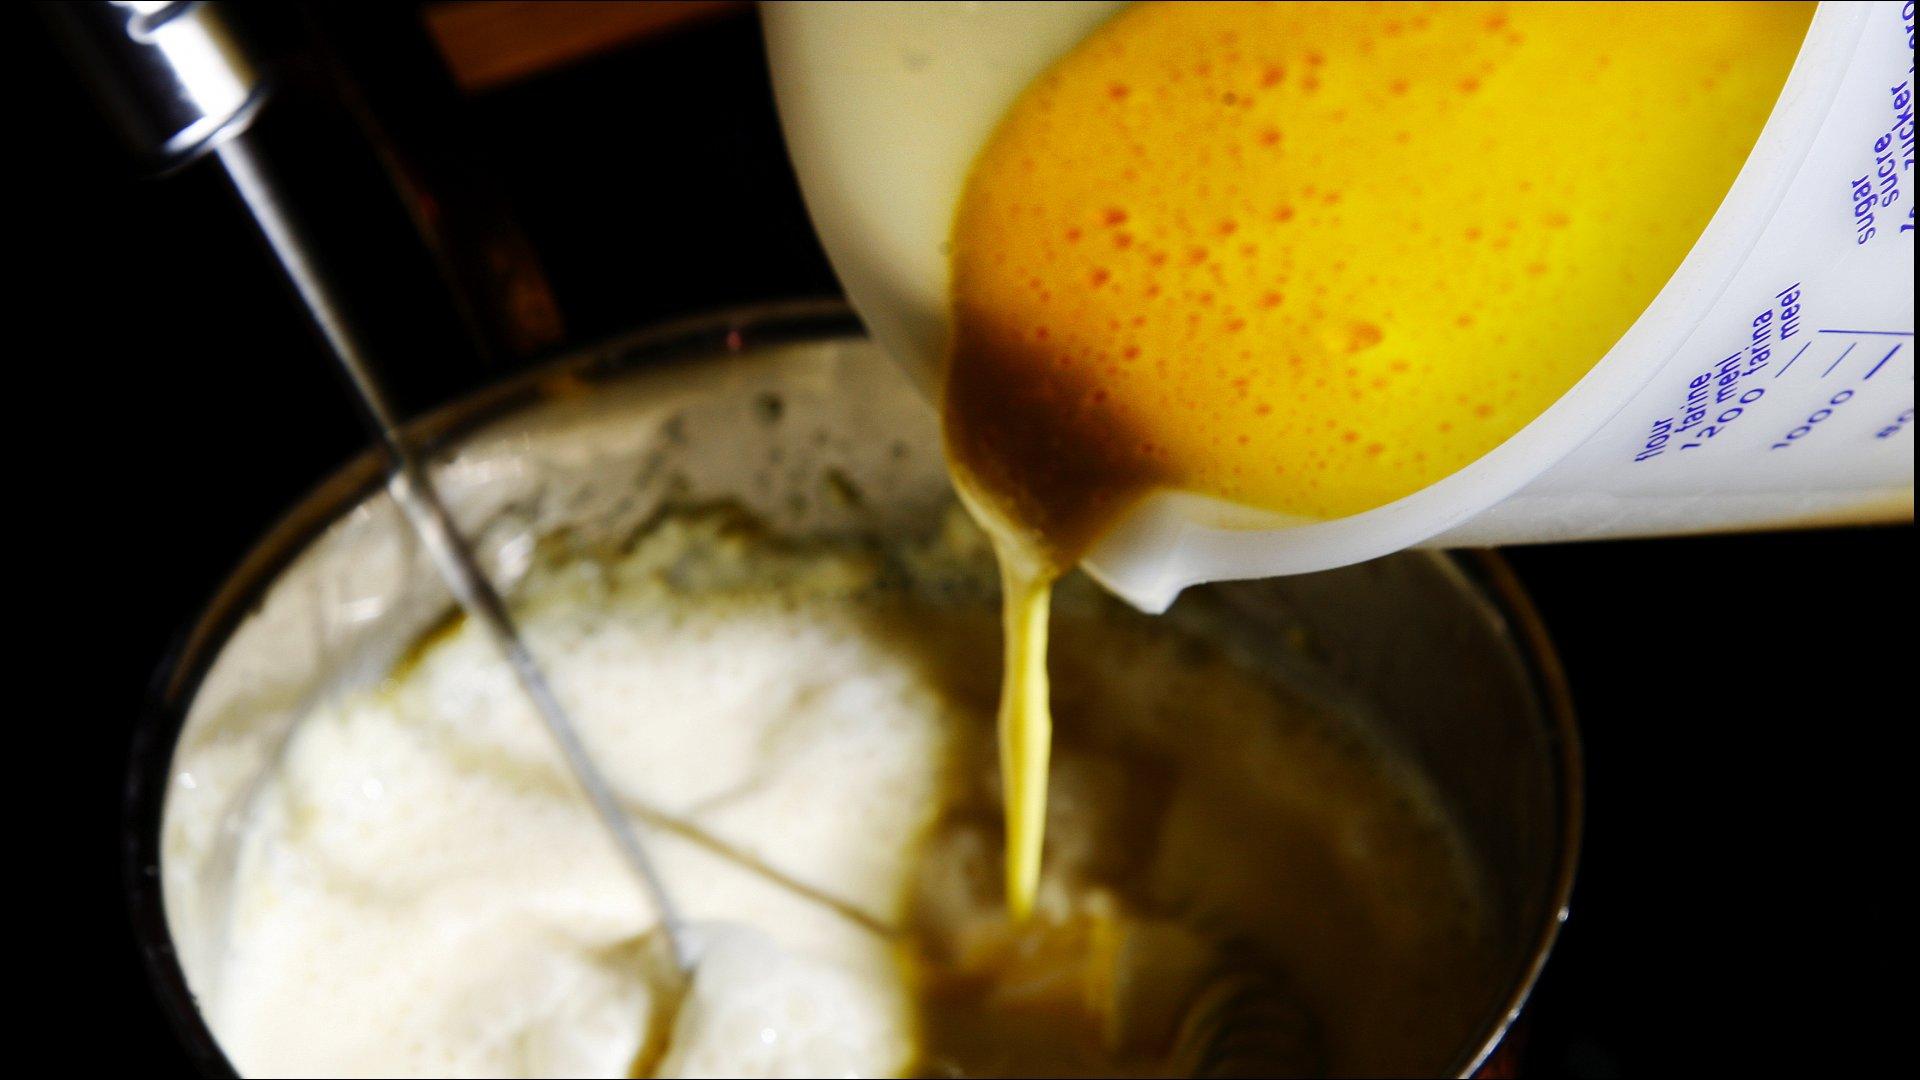 Pisk eggeplommene sammen med sukkeret til en tykk eggedosis. Visp kraftig i kjelen mens eggedosisen blandes i den varme fløten. Det er viktig at massen ikke koker, men varmes opp mot kokepunktet. Visp kraftig til kremsausen har fått en tykk konsistens, og til den dekker baksiden på en spiseskje.